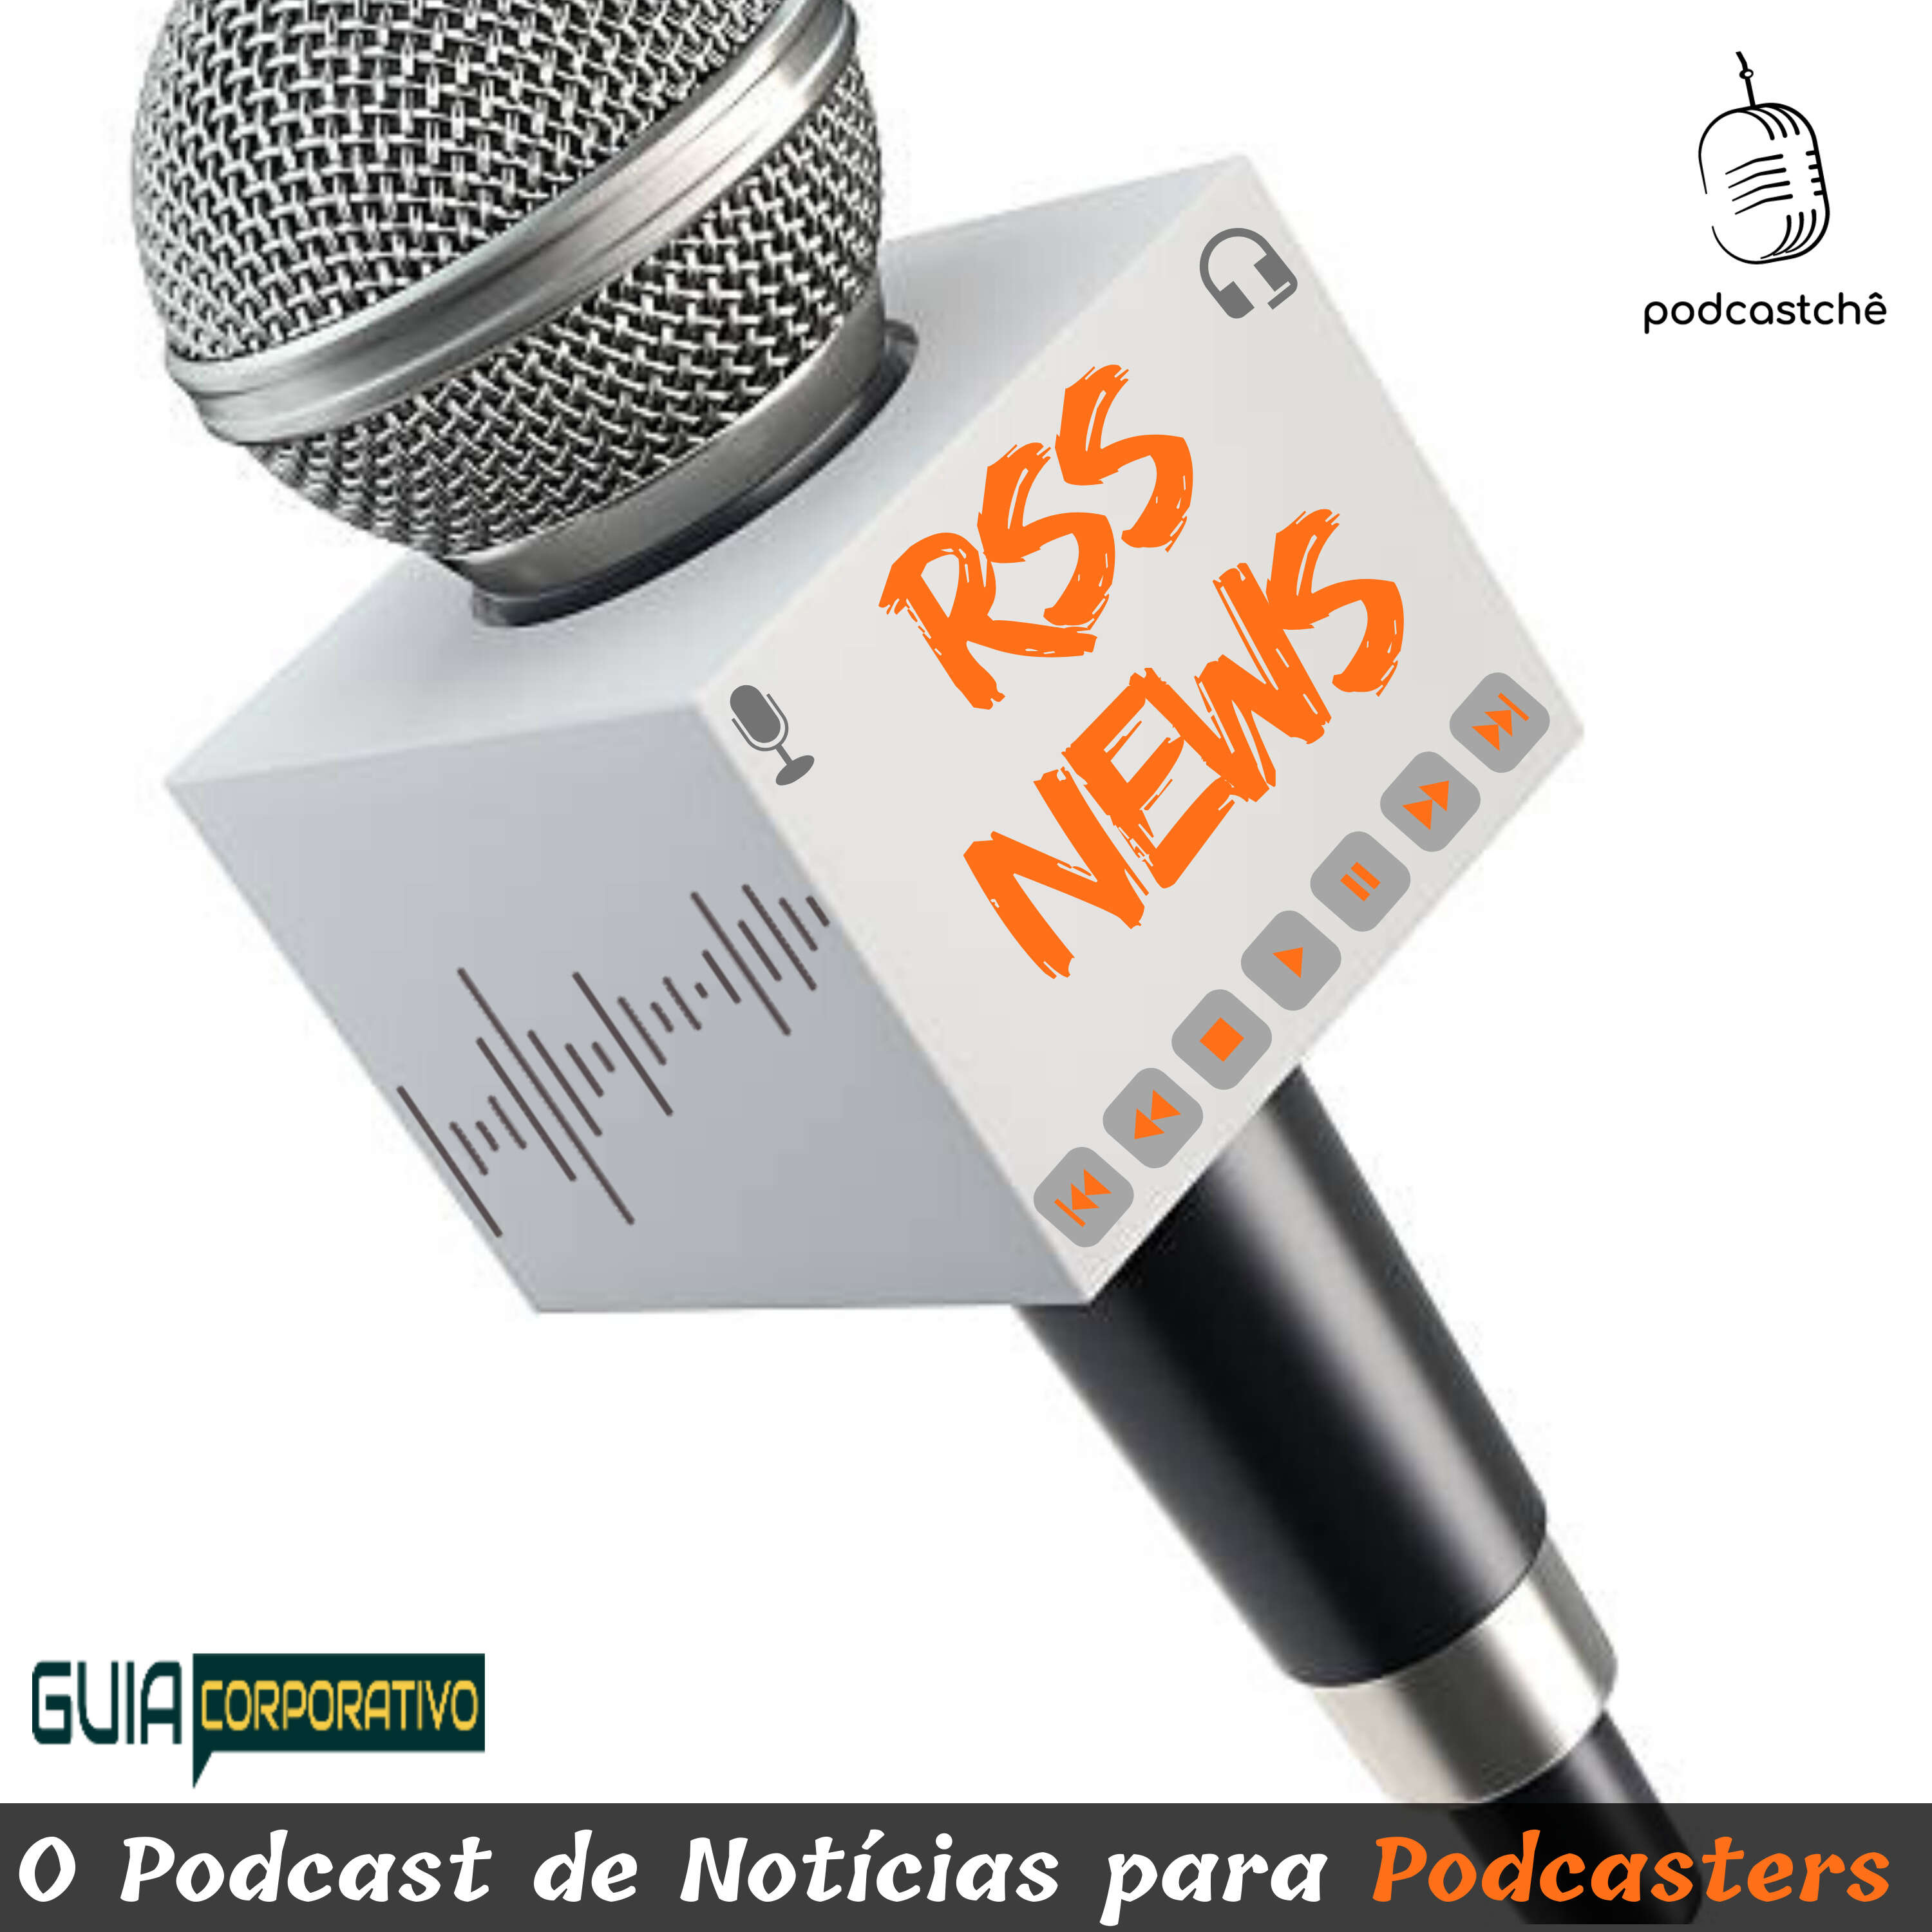 A highlight from Brasil - um dos pases com o maior nmero de pessoas ouvindo podcasts mensalmente